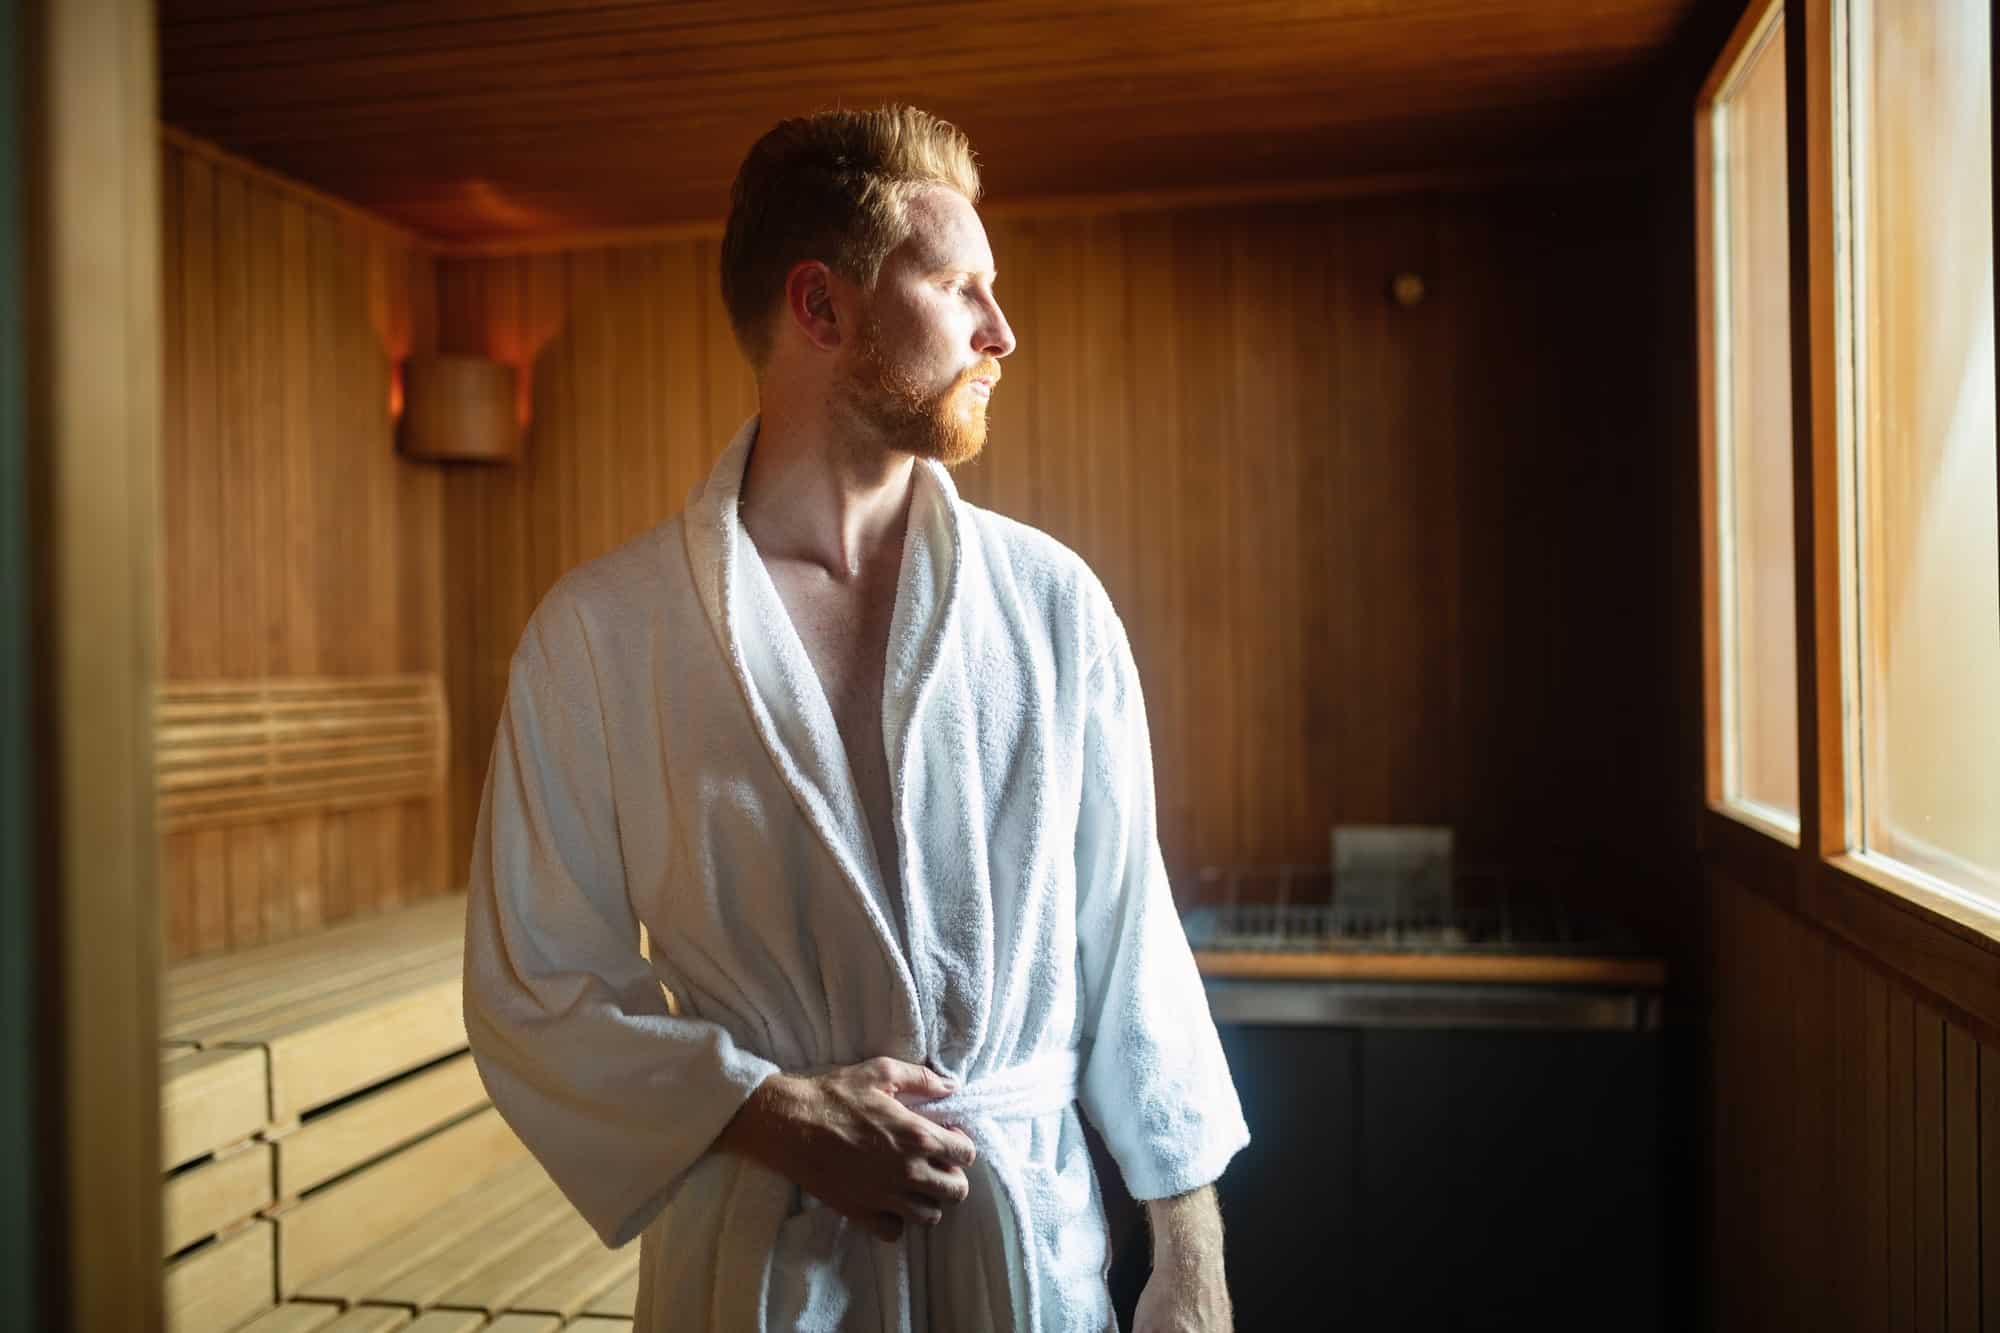 Mann in Sauna denkt nach - wie oft in die Sauna ist gut und gesund